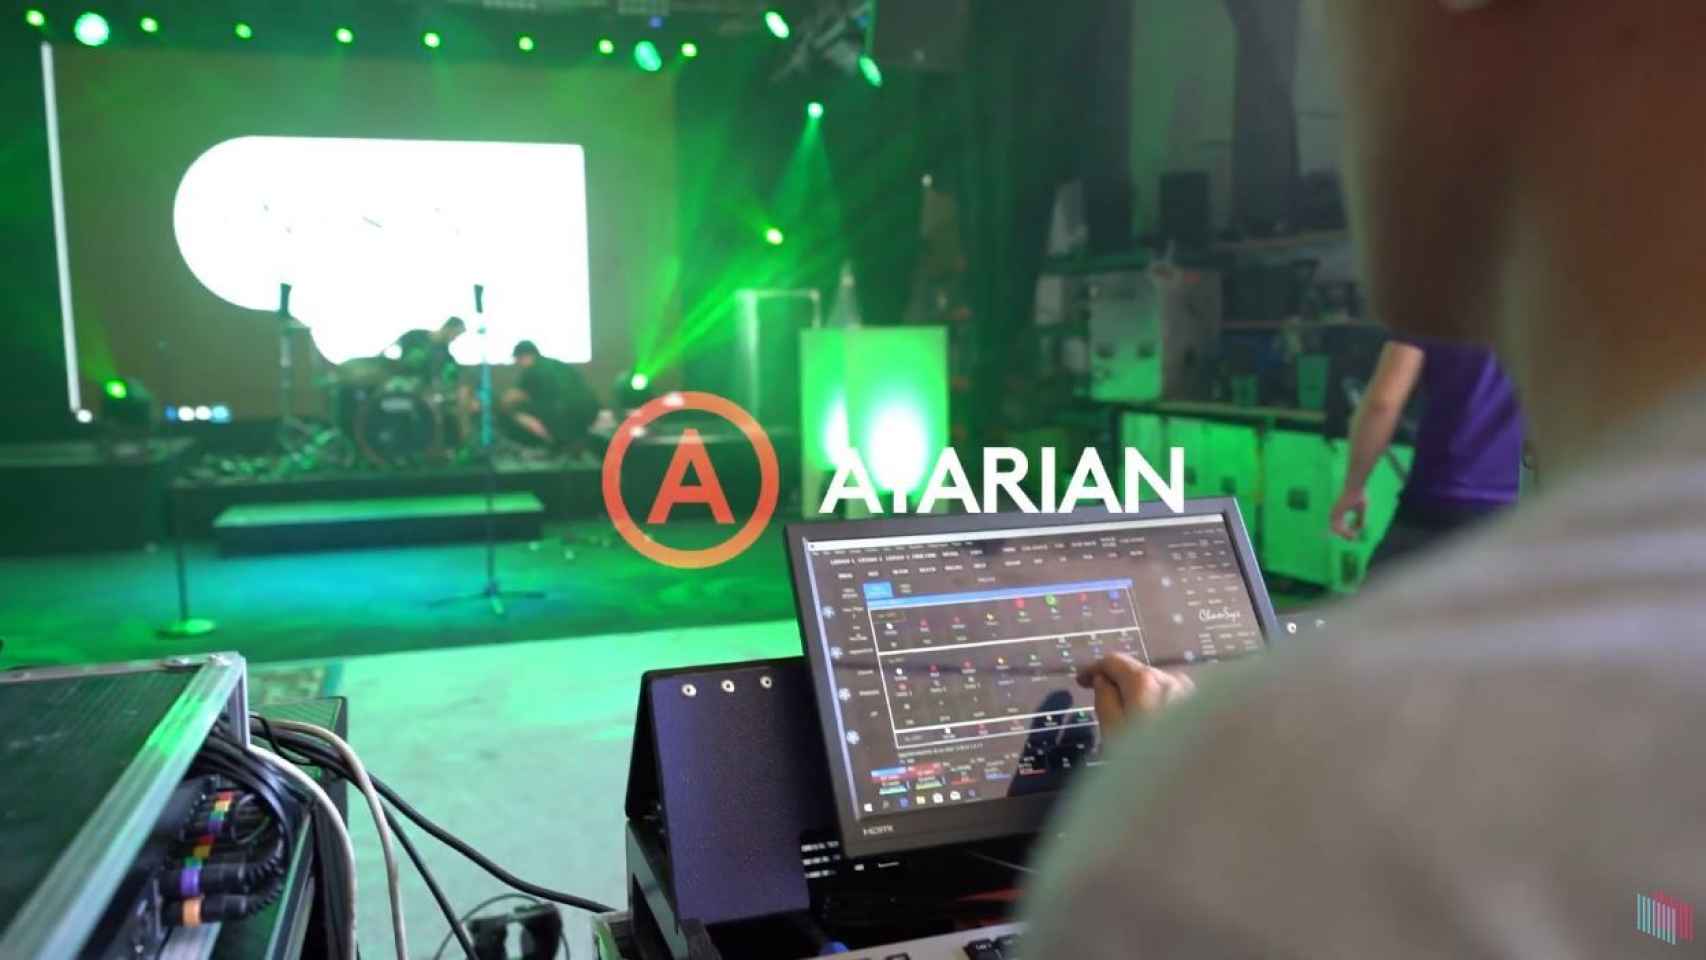 Estudio de grabación del proyecto Atarian.